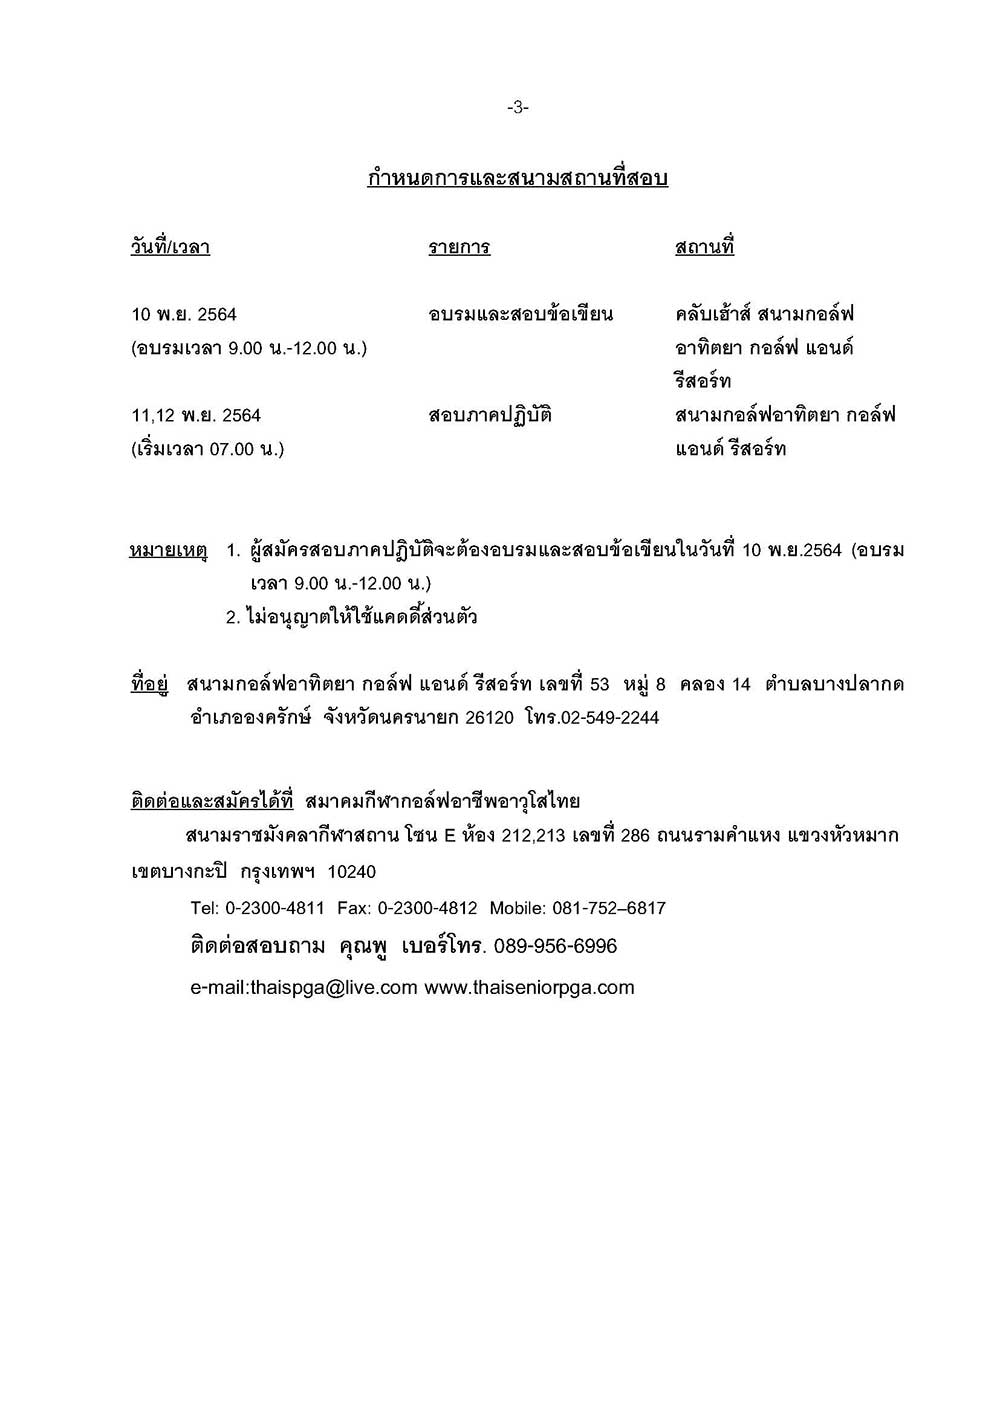 หนงสอสอบภาษาไทย อาทตยา 11 12 พ.ย 03